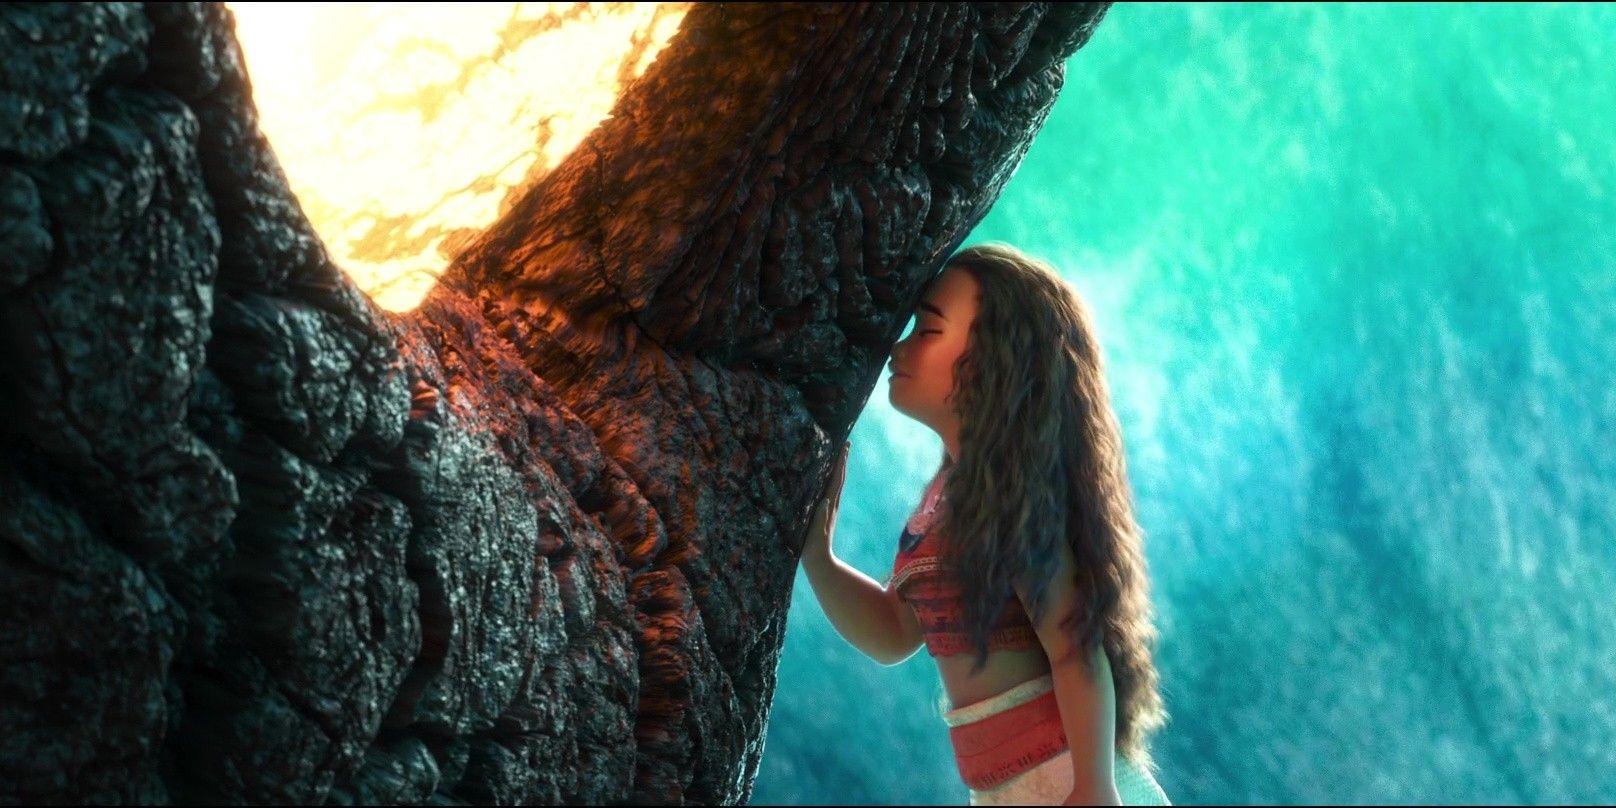 Moana touche tendrement son front à un arbre dans 'Moana' (2016).